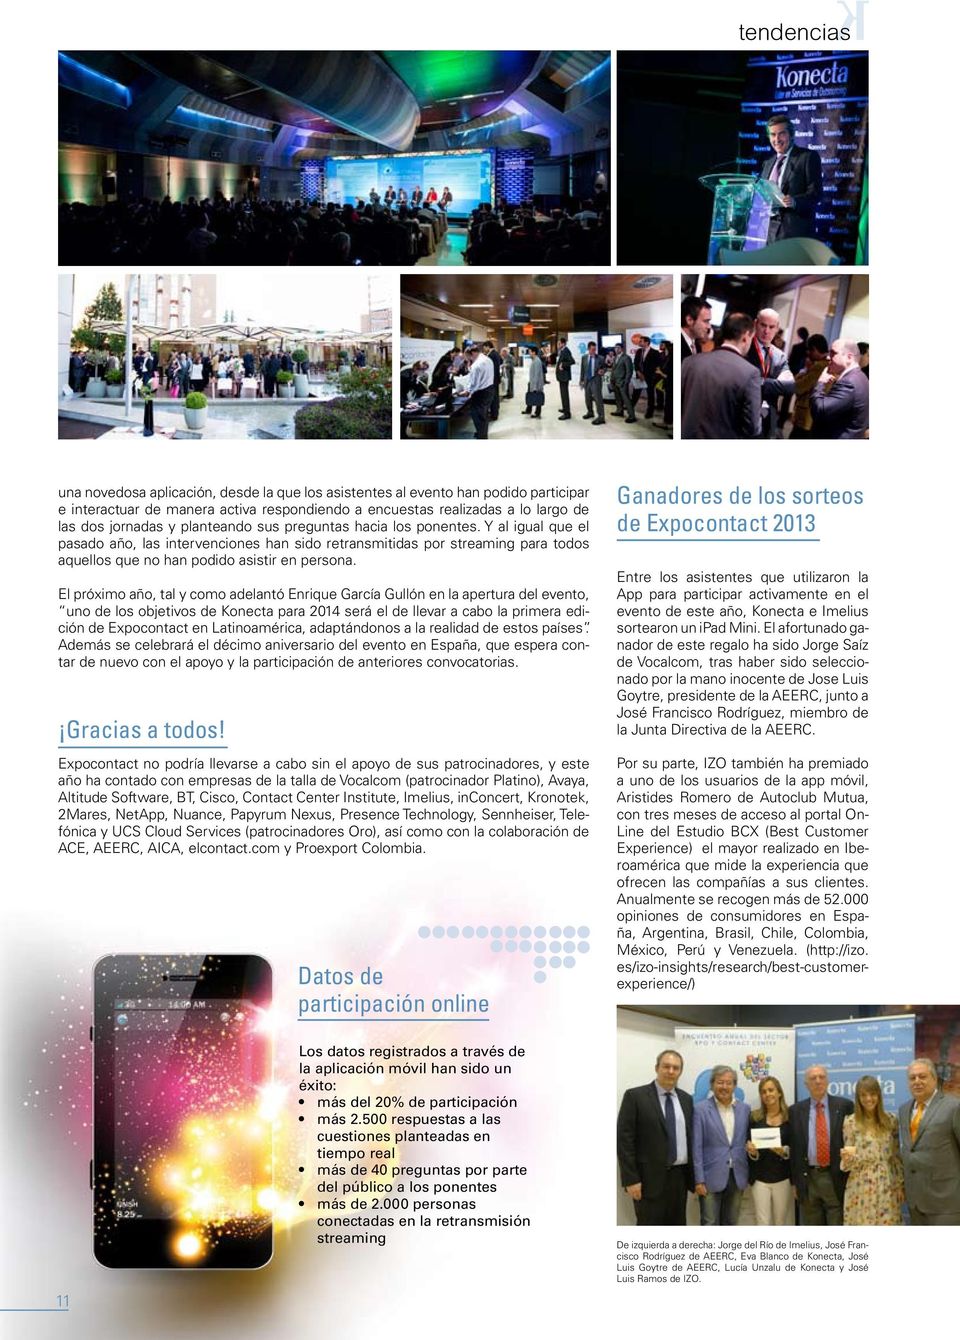 El próximo año, tal y como adelantó Enrique García Gullón en la apertura del evento, uno de los objetivos de Konecta para 2014 será el de llevar a cabo la primera edición de Expocontact en